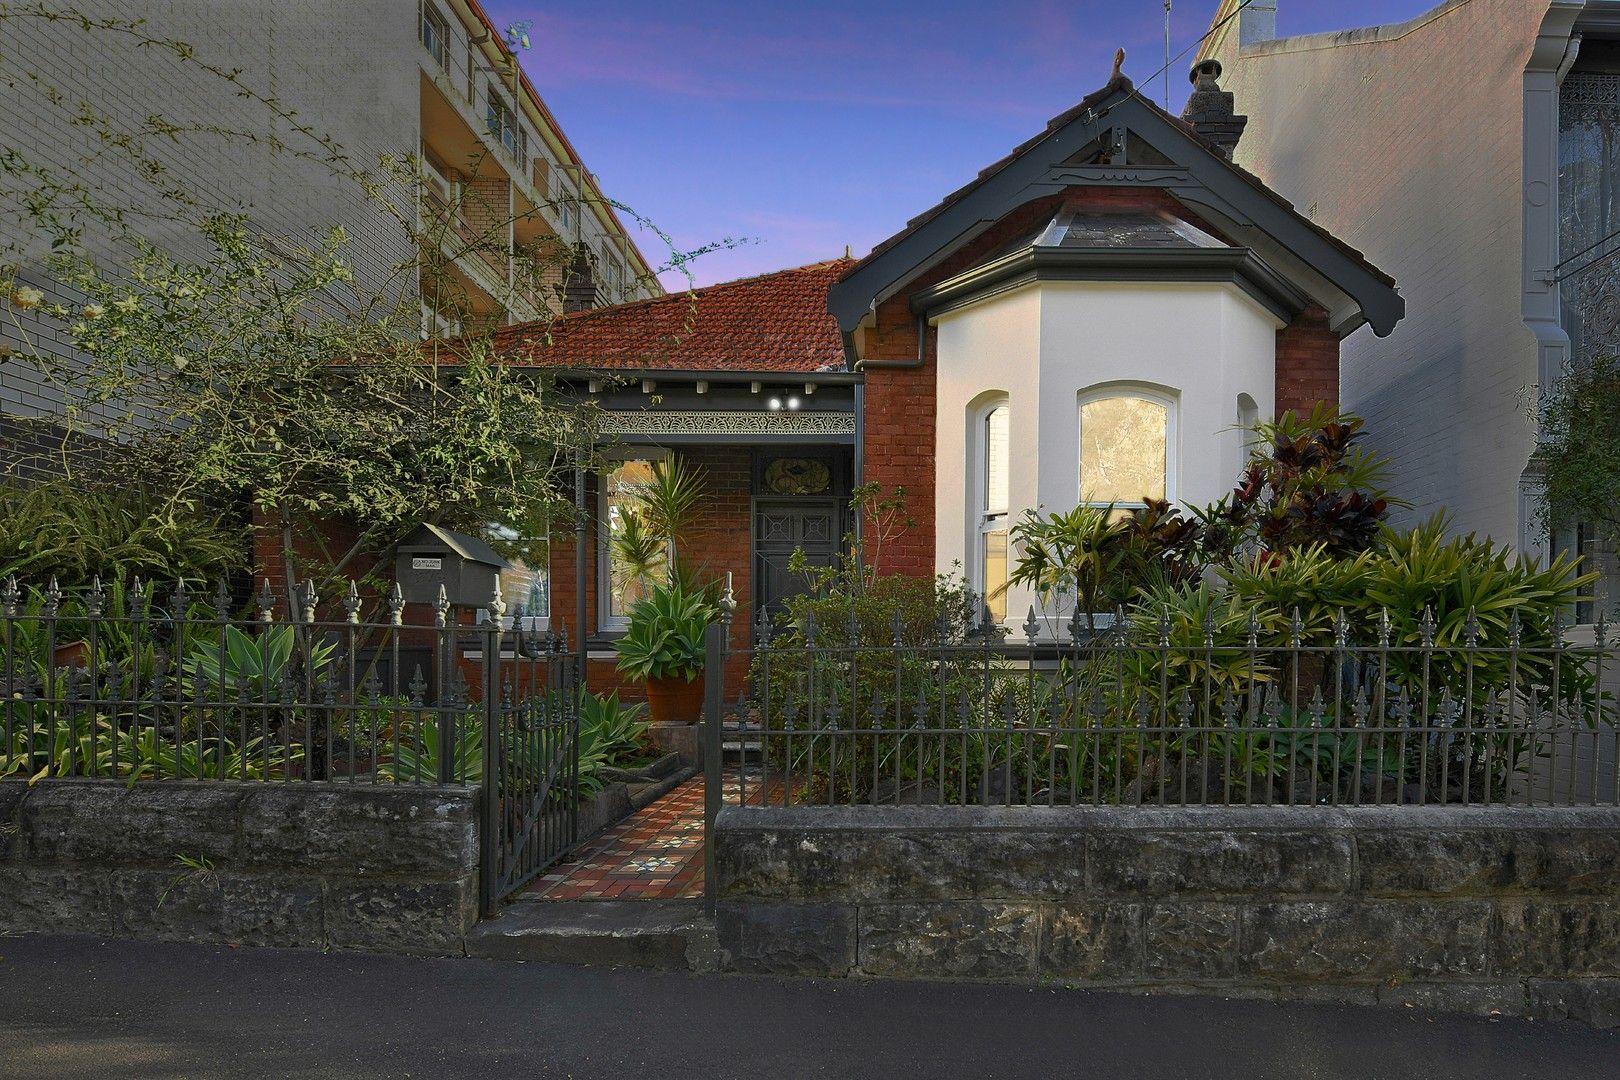 4 bedrooms House in 278 Glebe Point Road GLEBE NSW, 2037